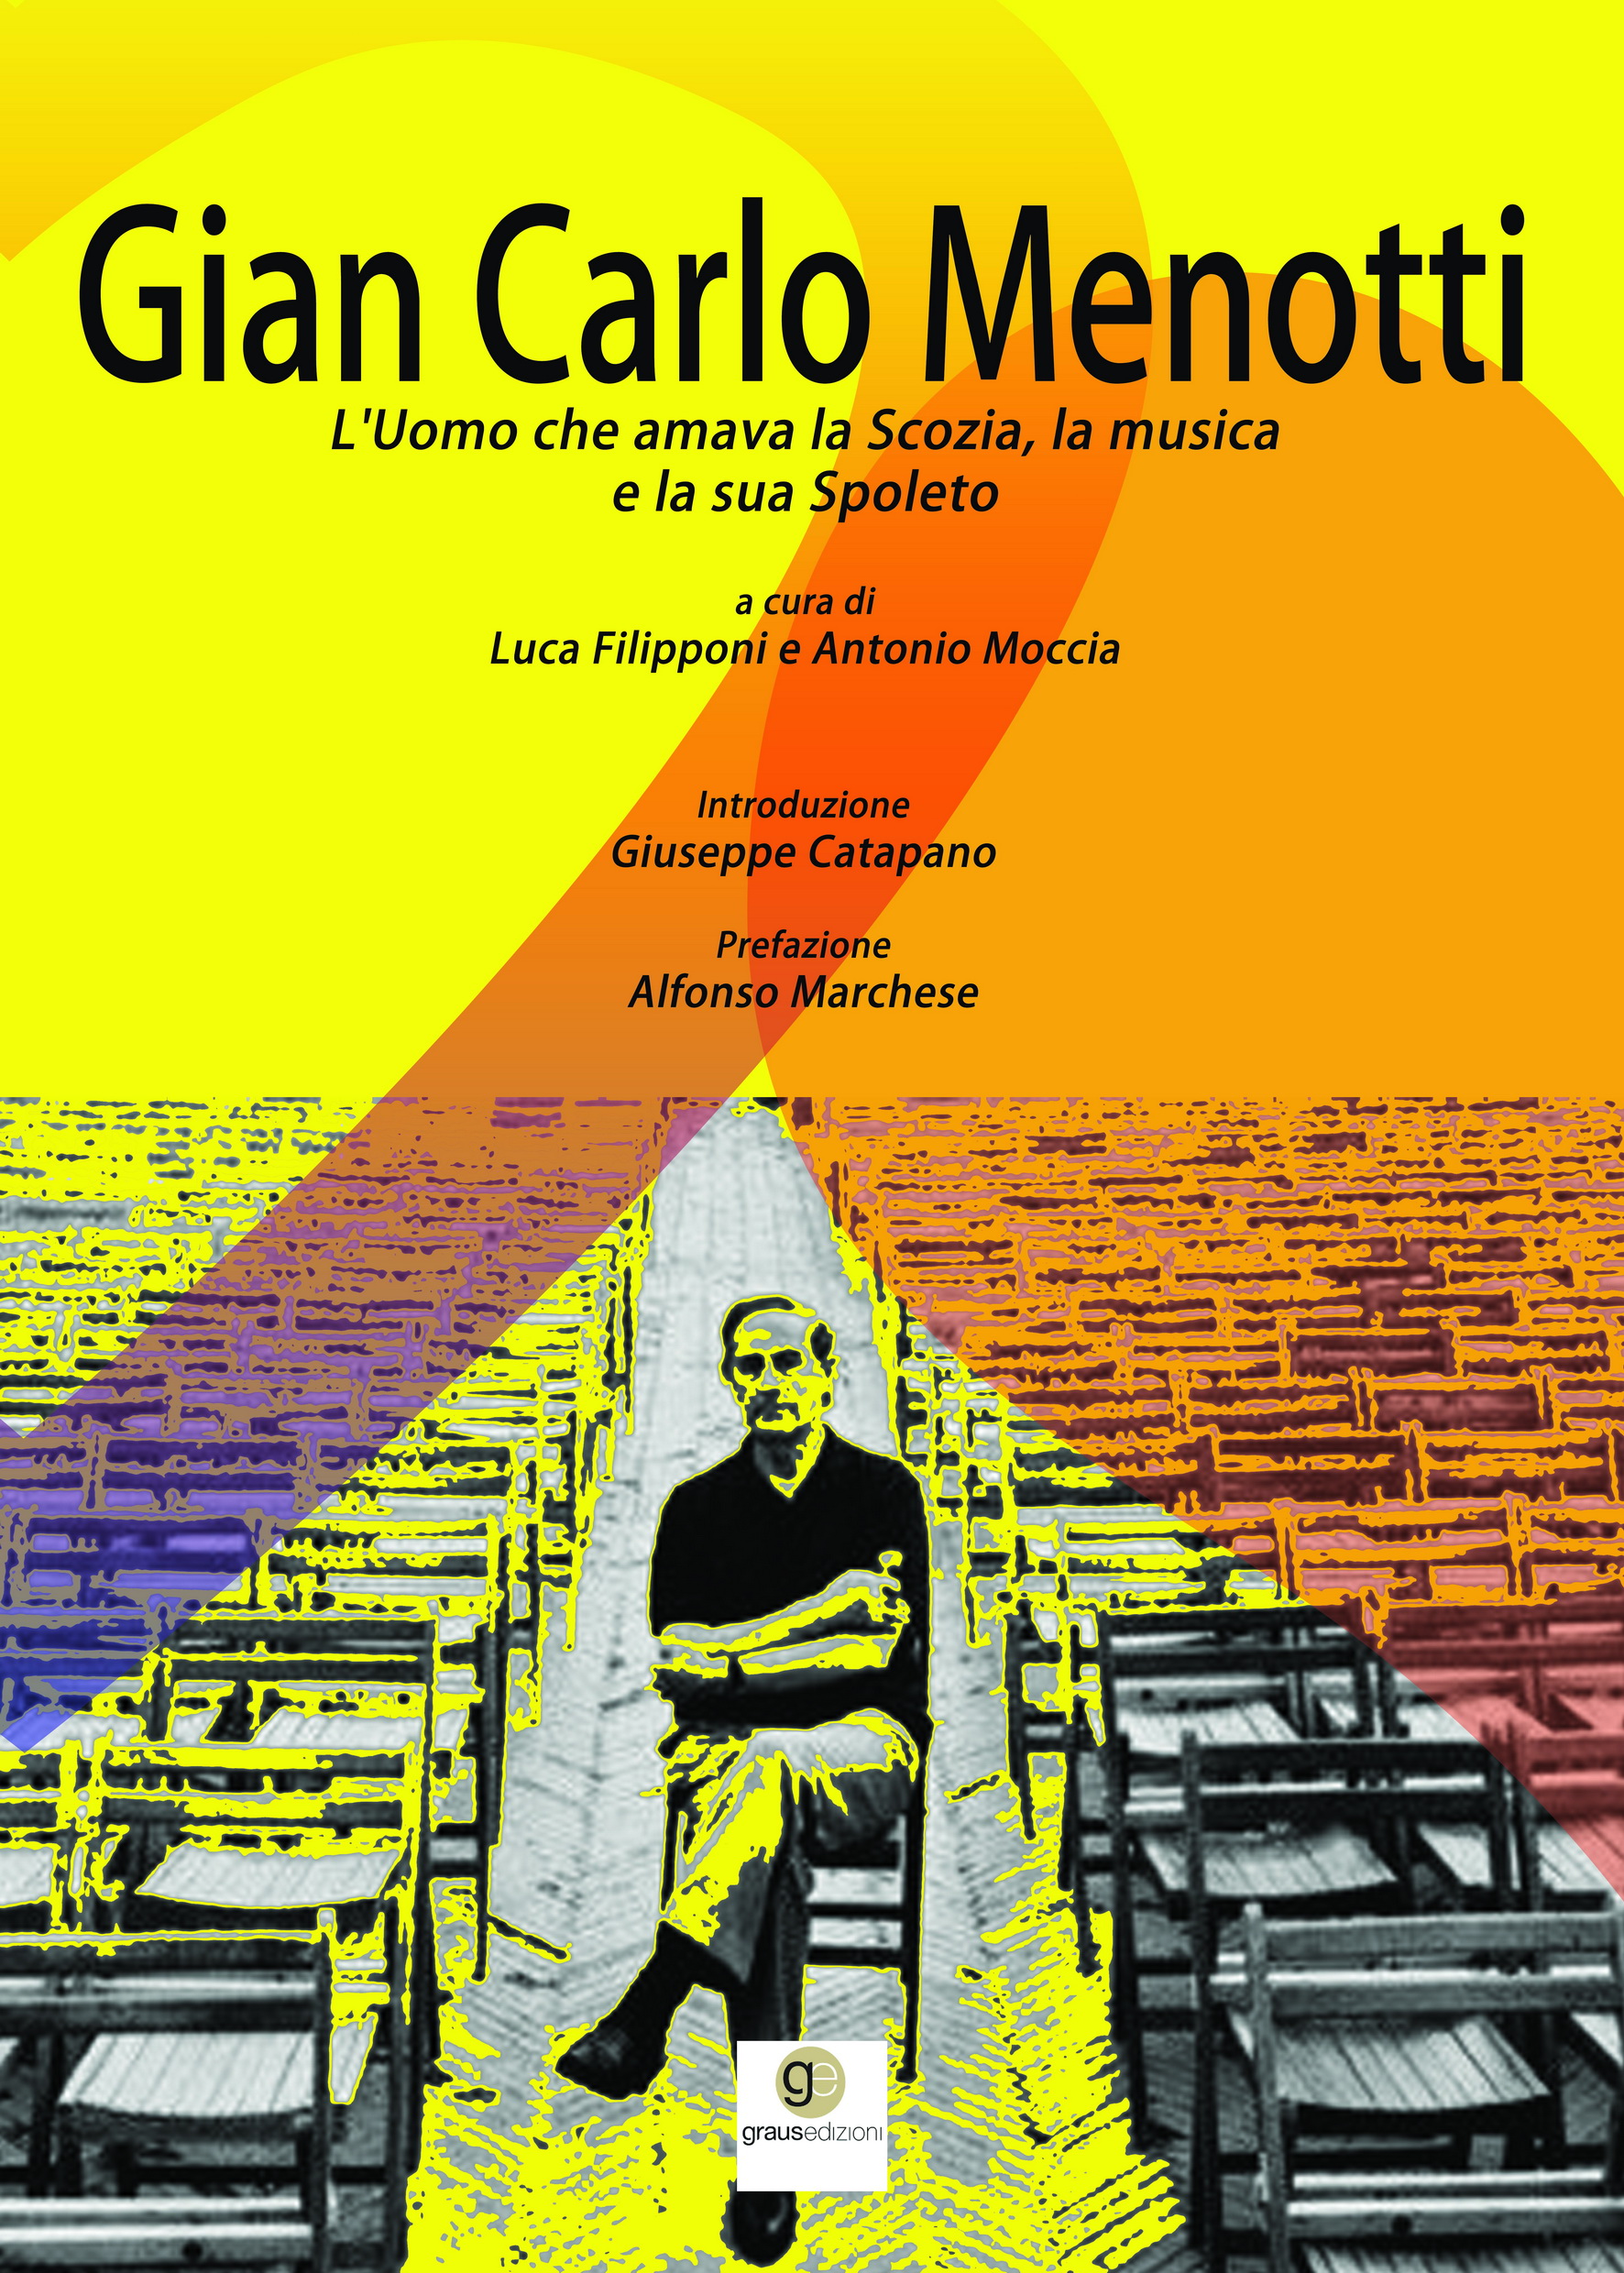 La Vita di Giancarlo Menotti in un Libro di Luca Filipponi e Antonio Moccia  (Graus Editore)